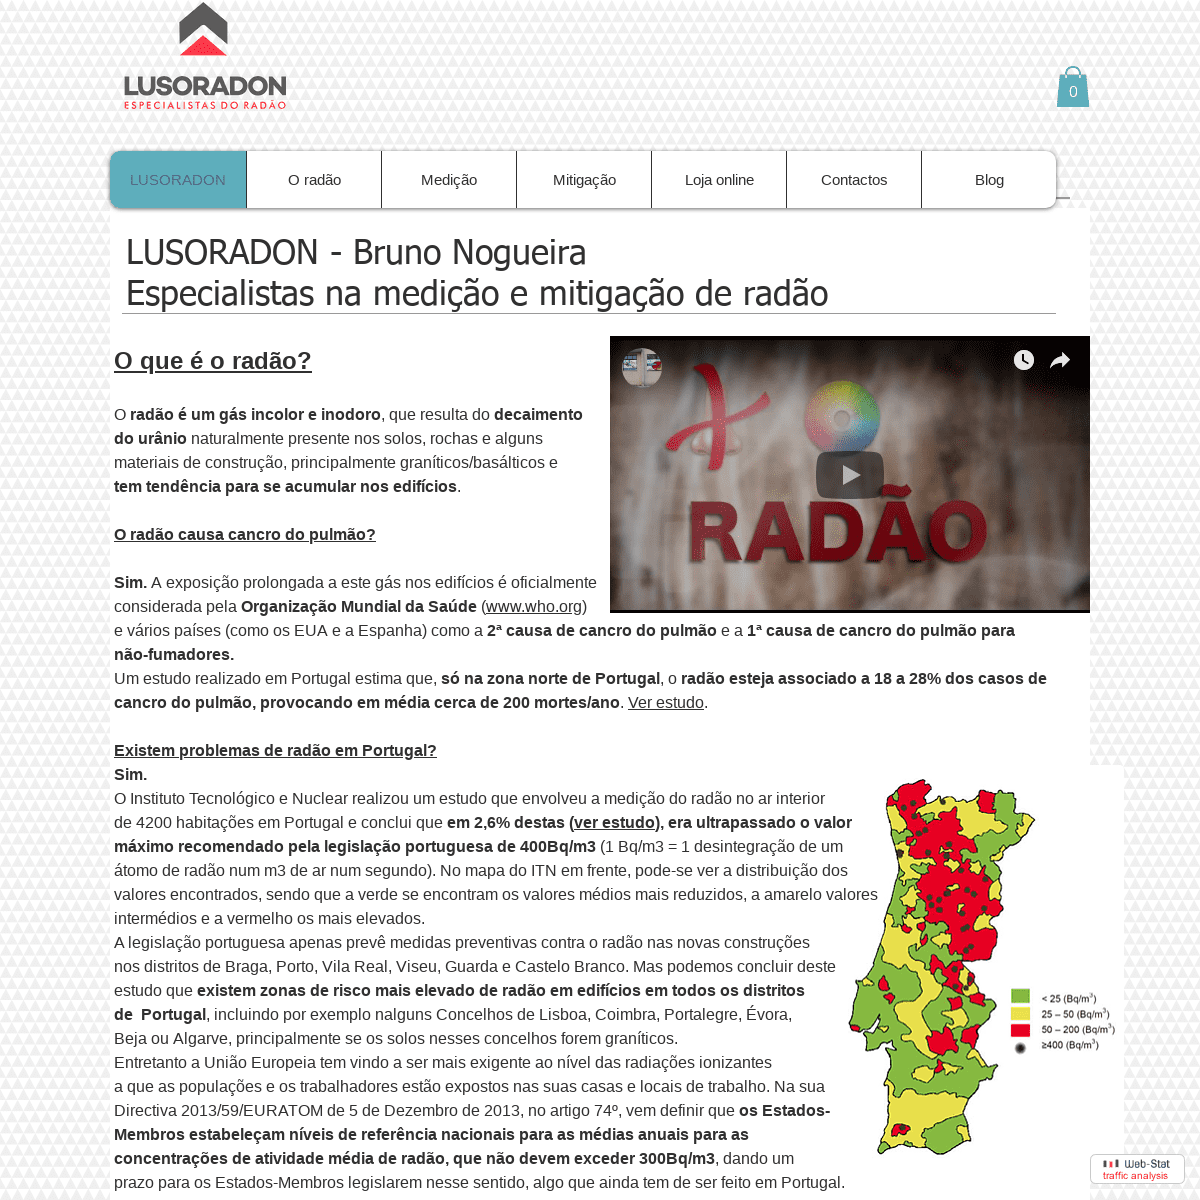 LUSORADON - especialistas na medição e mitigação do radão